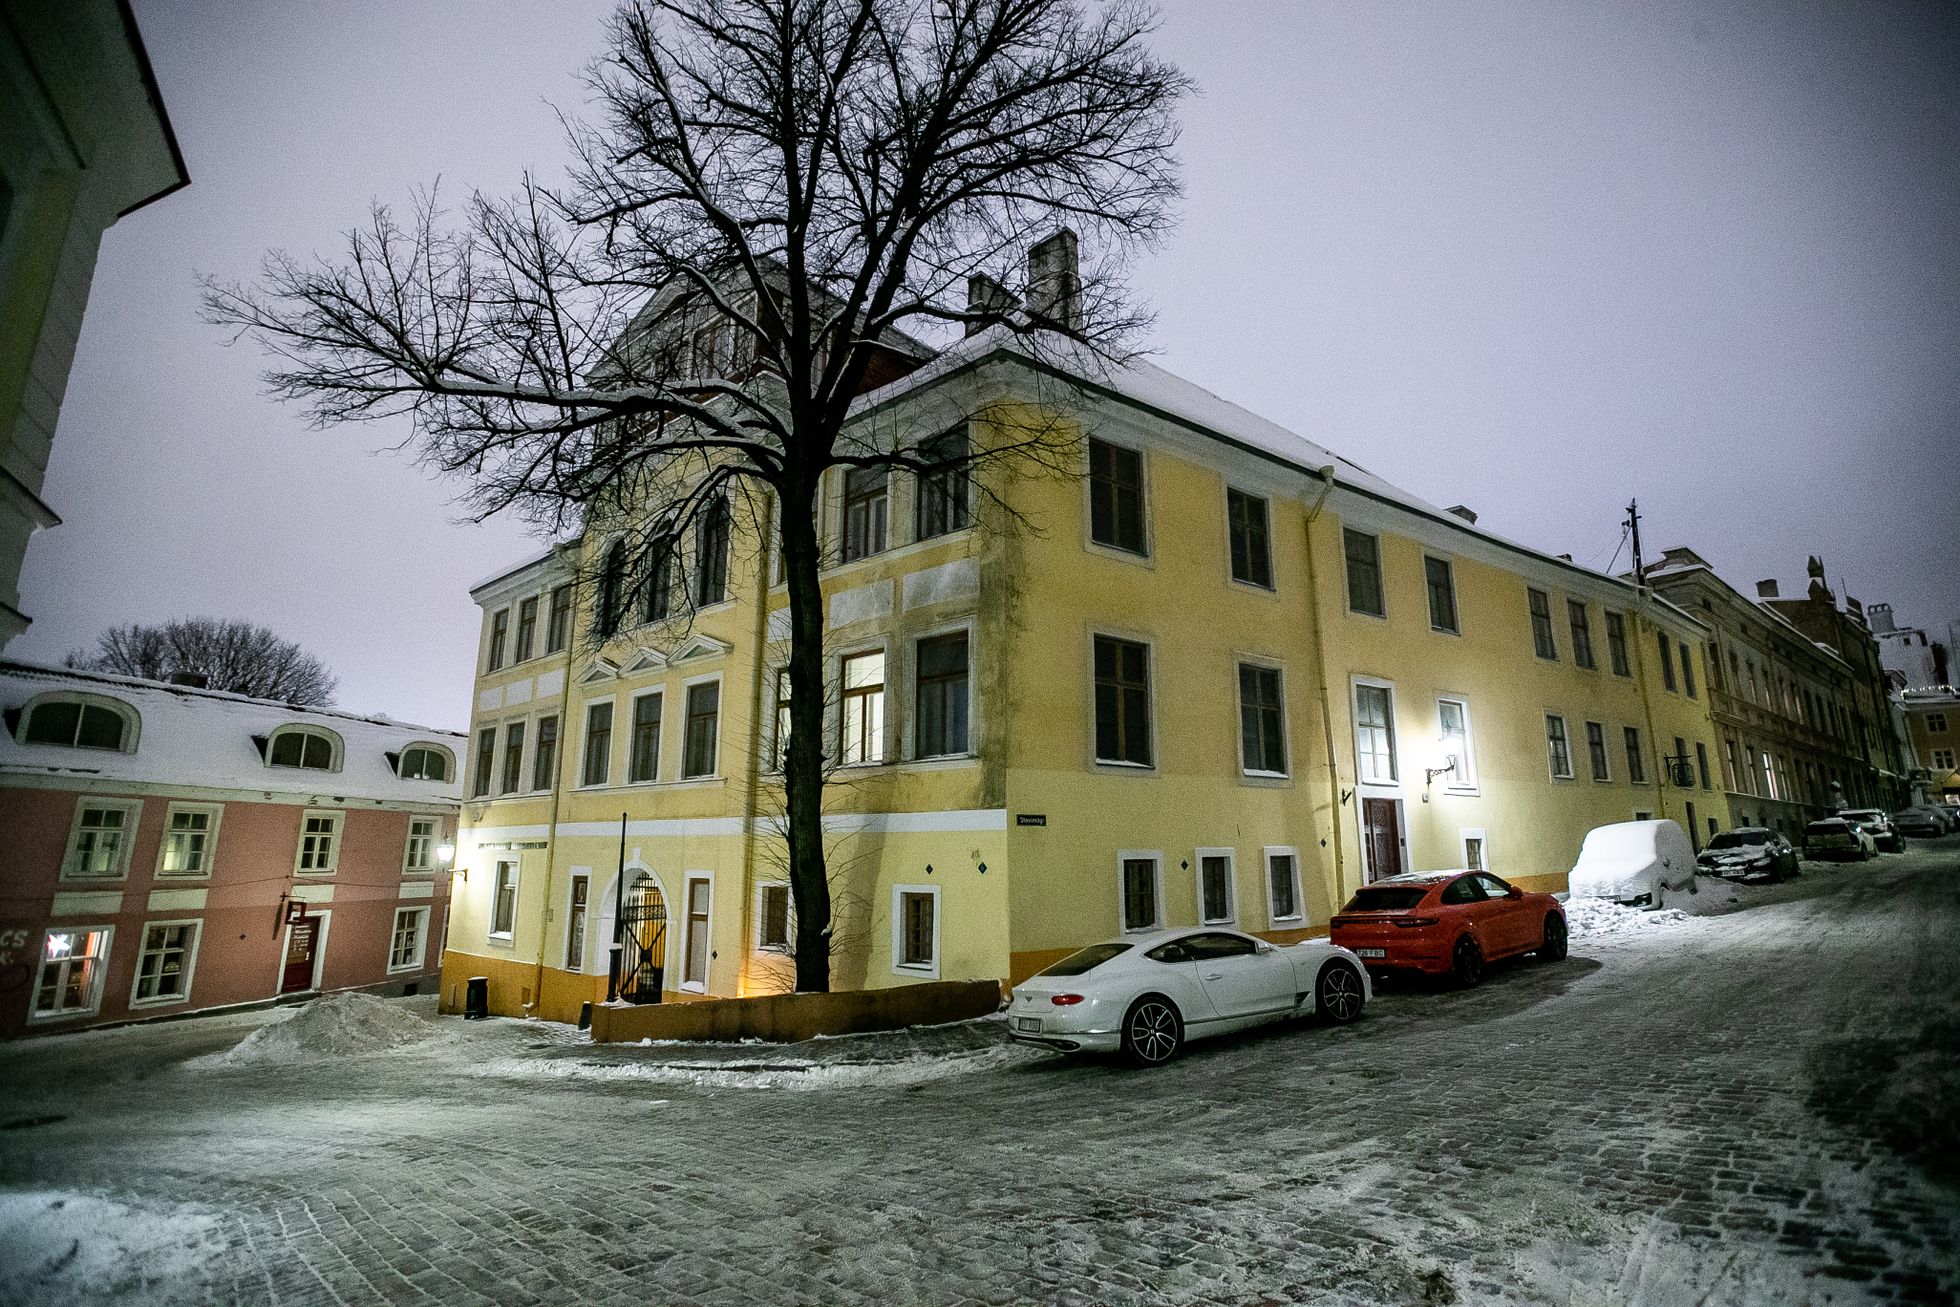 Здание по адресу Олевимяги, 16, в Старом городе Таллинна.